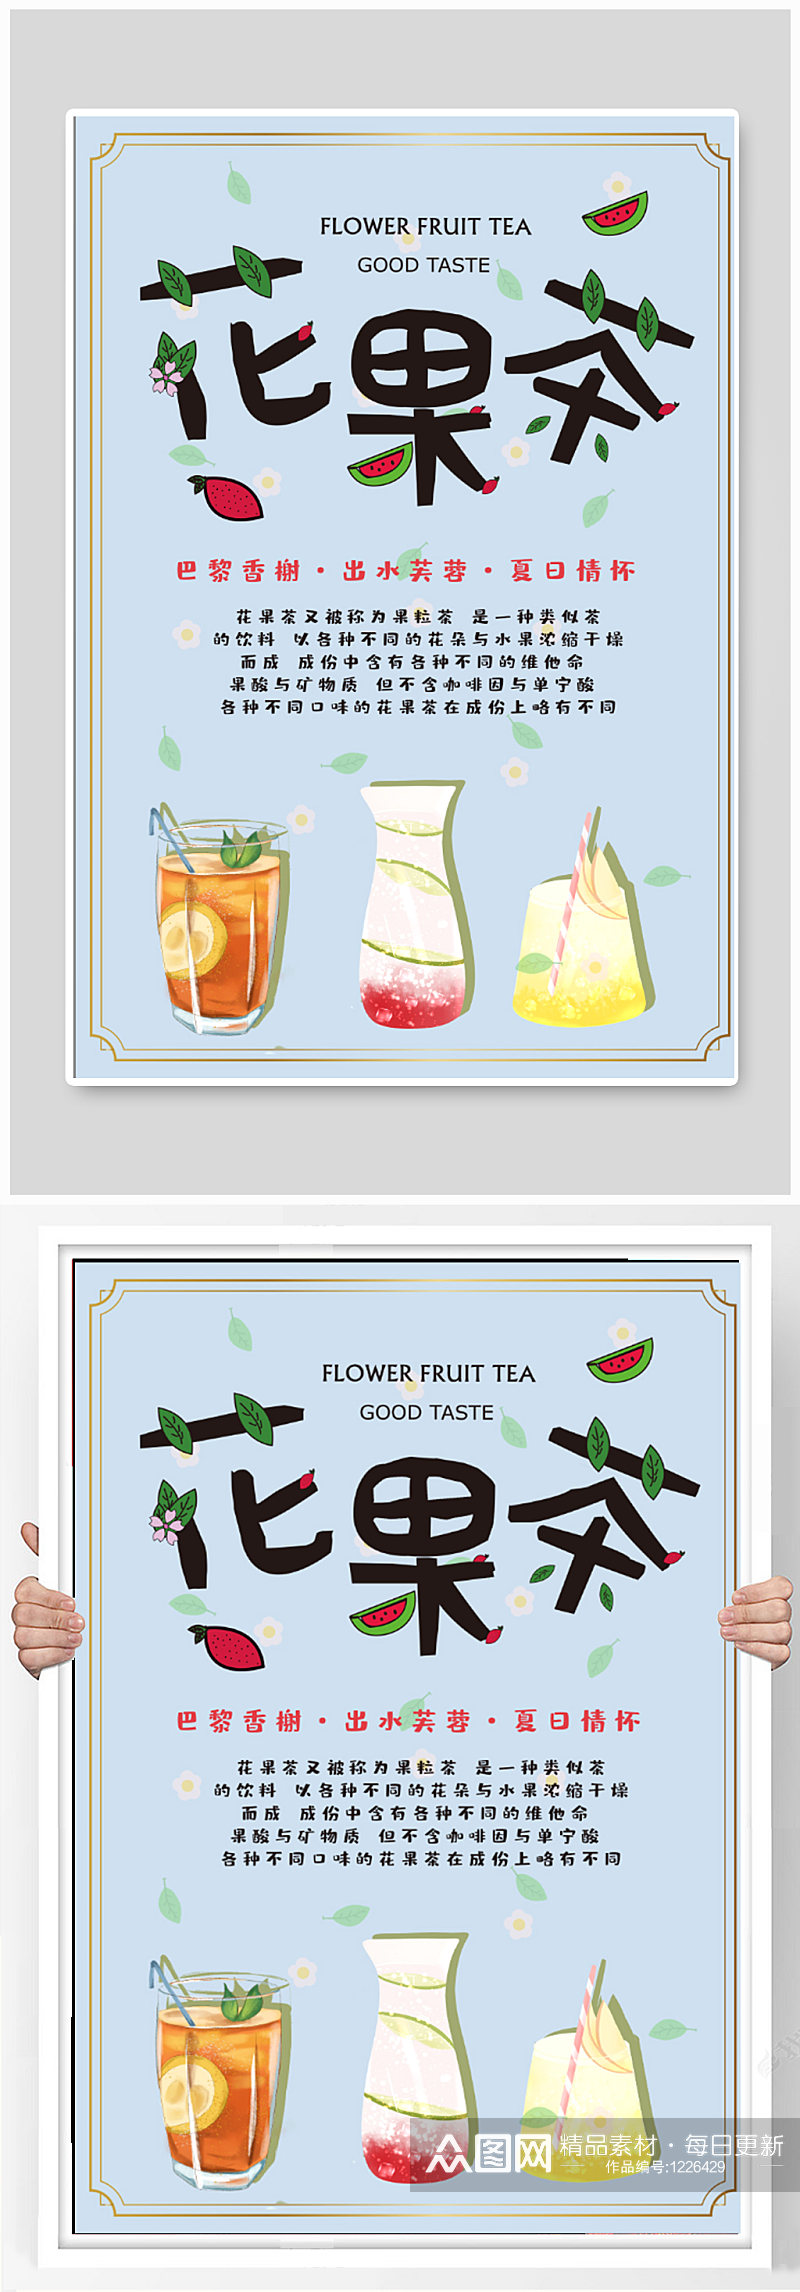 花果茶饮品店海报素材